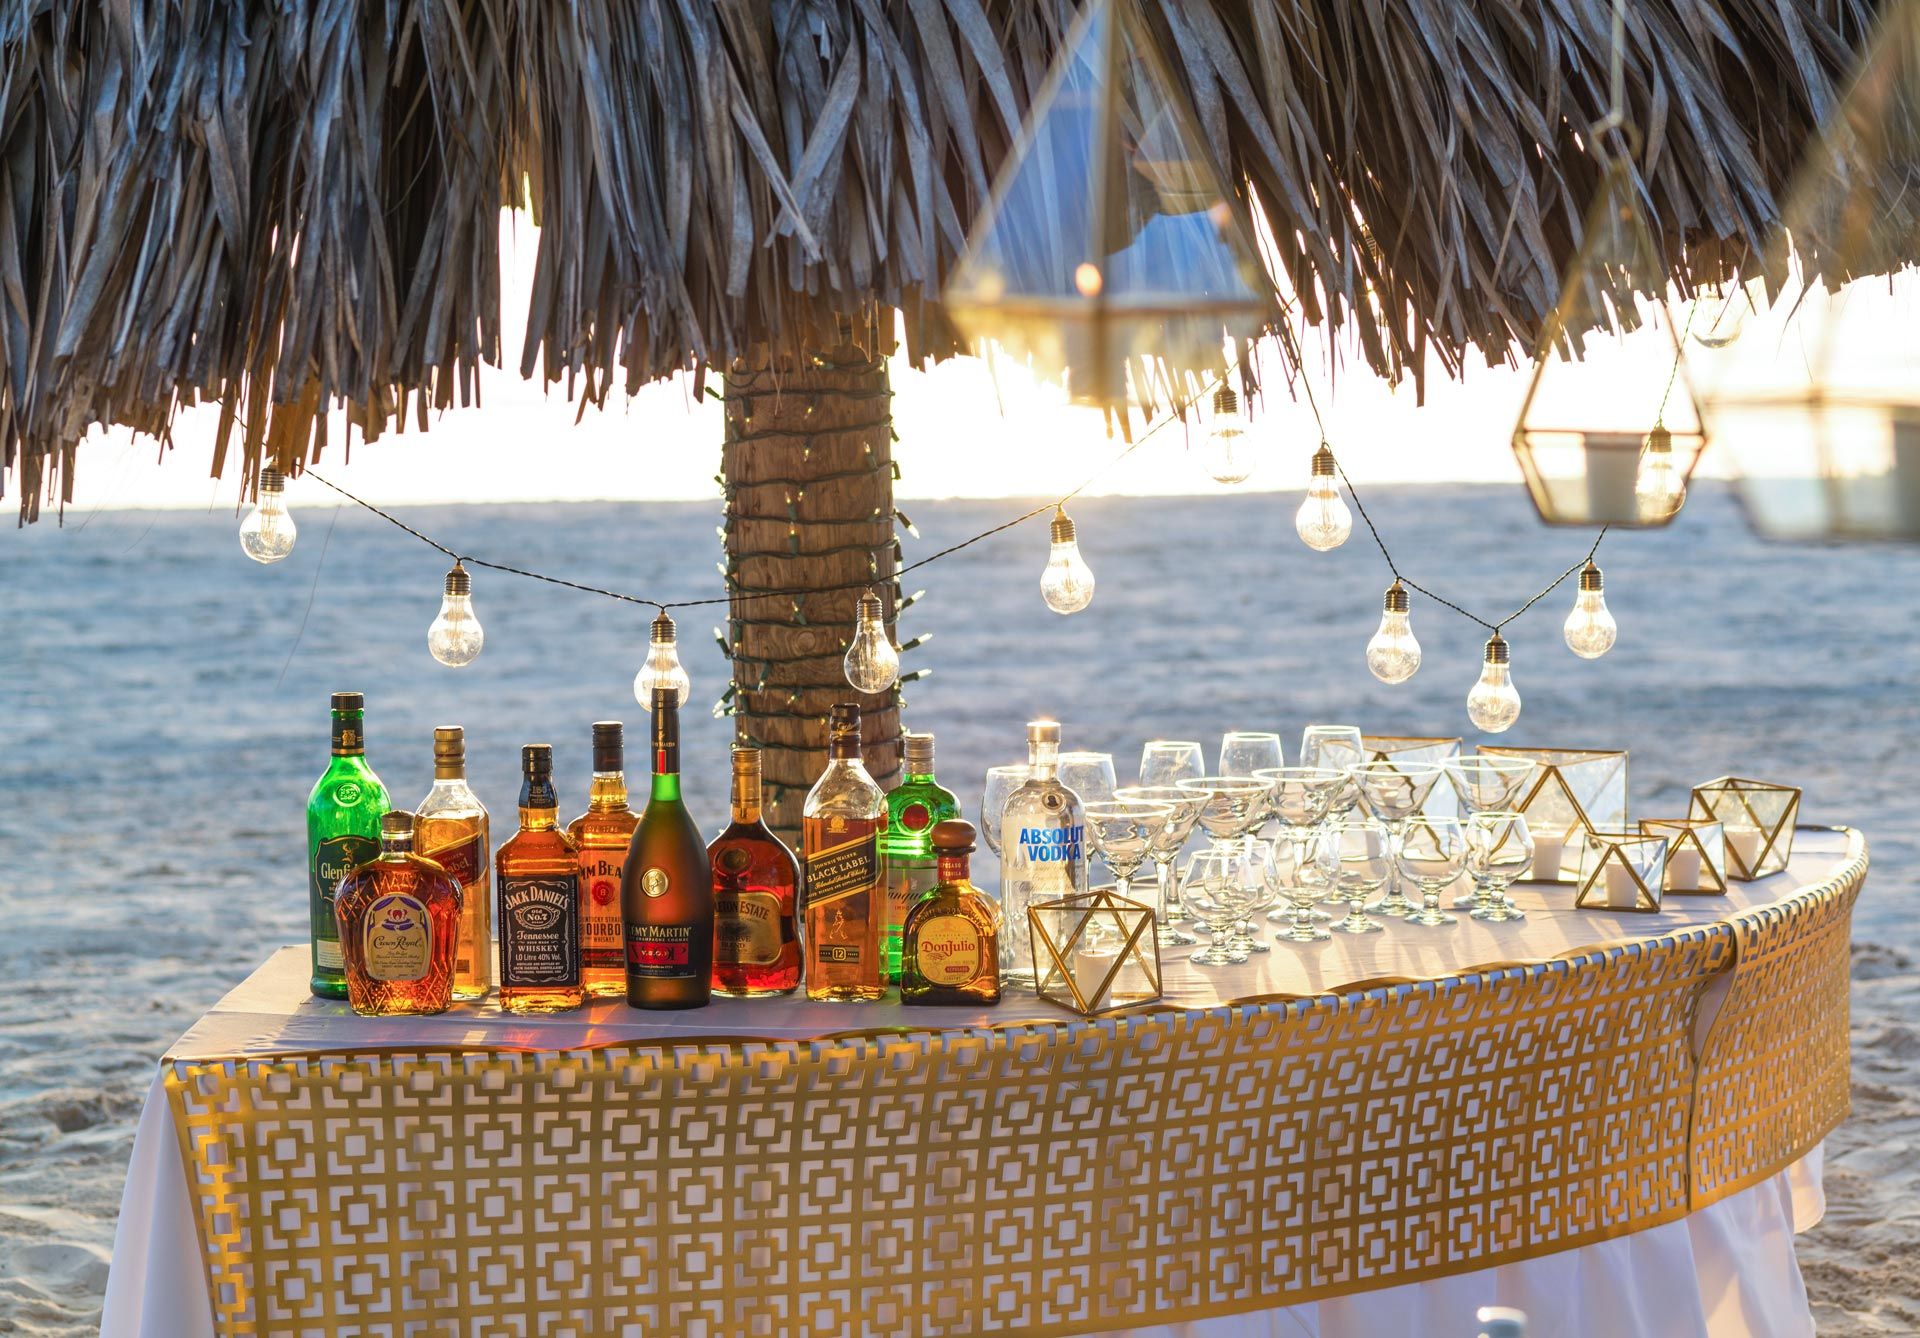 Bar at beach wedding reception